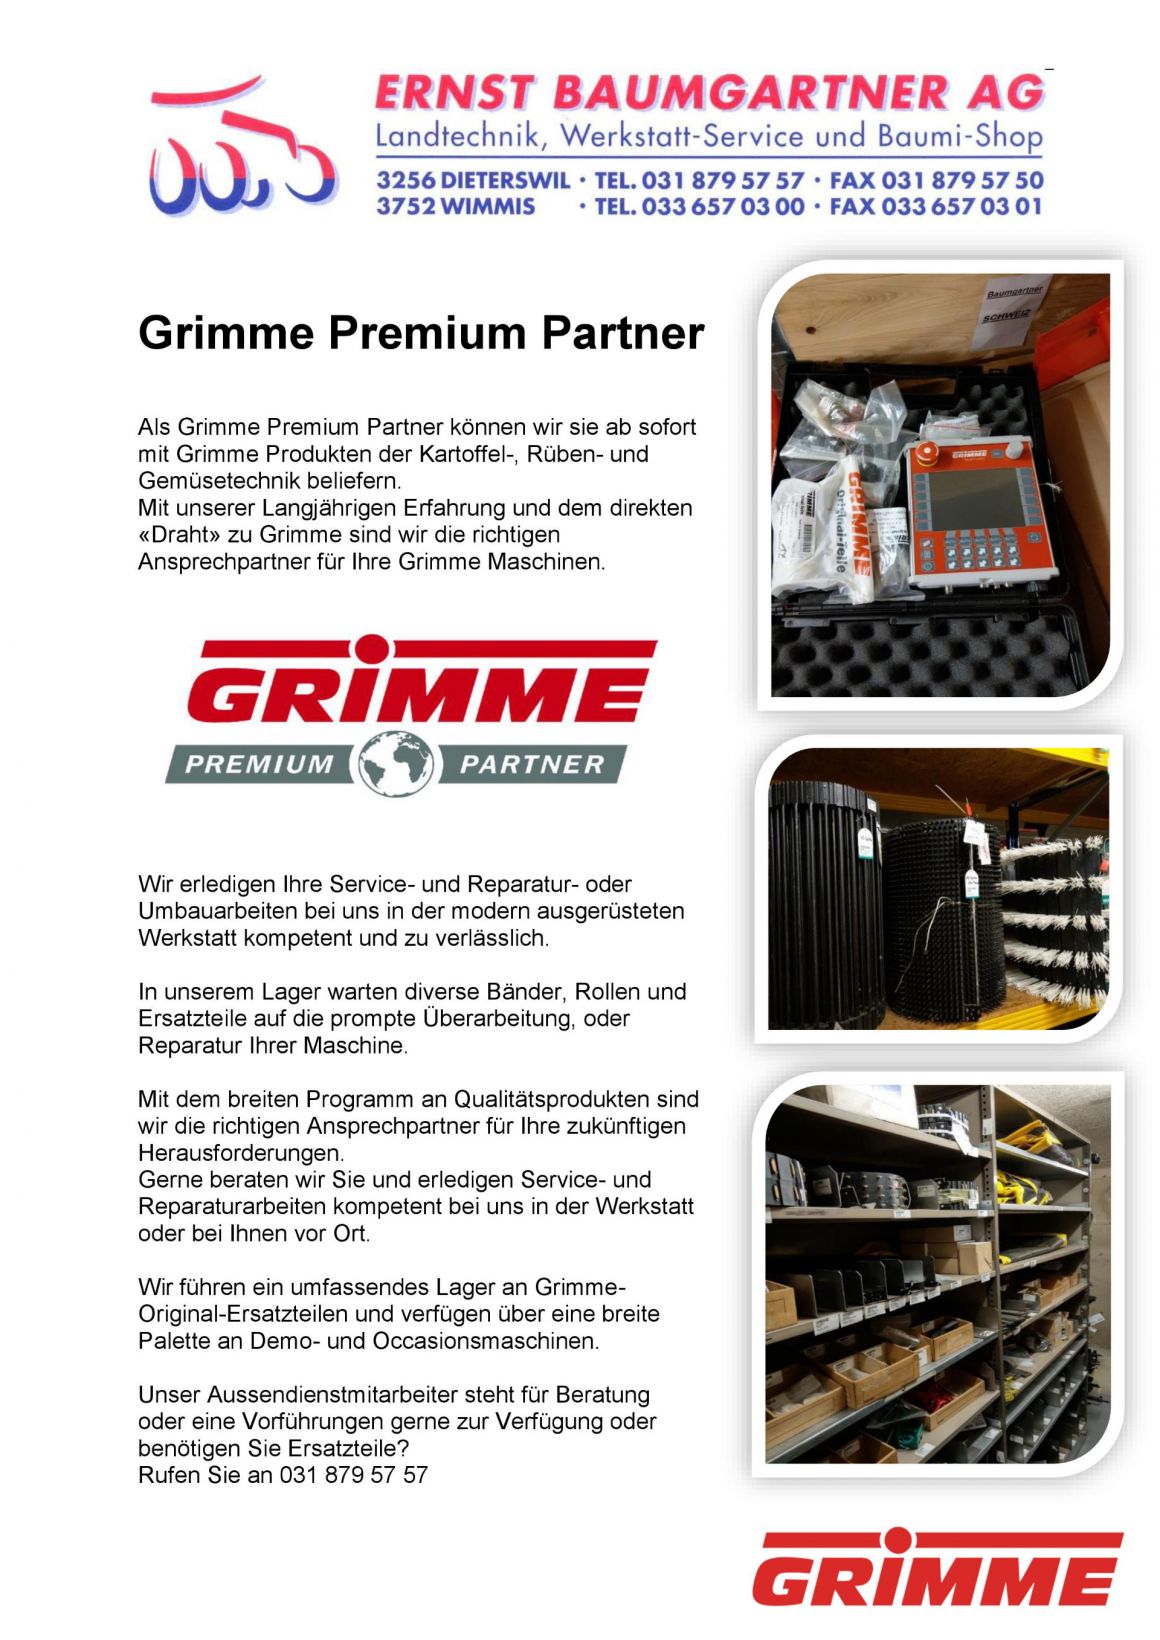 Grimme Premium Partner